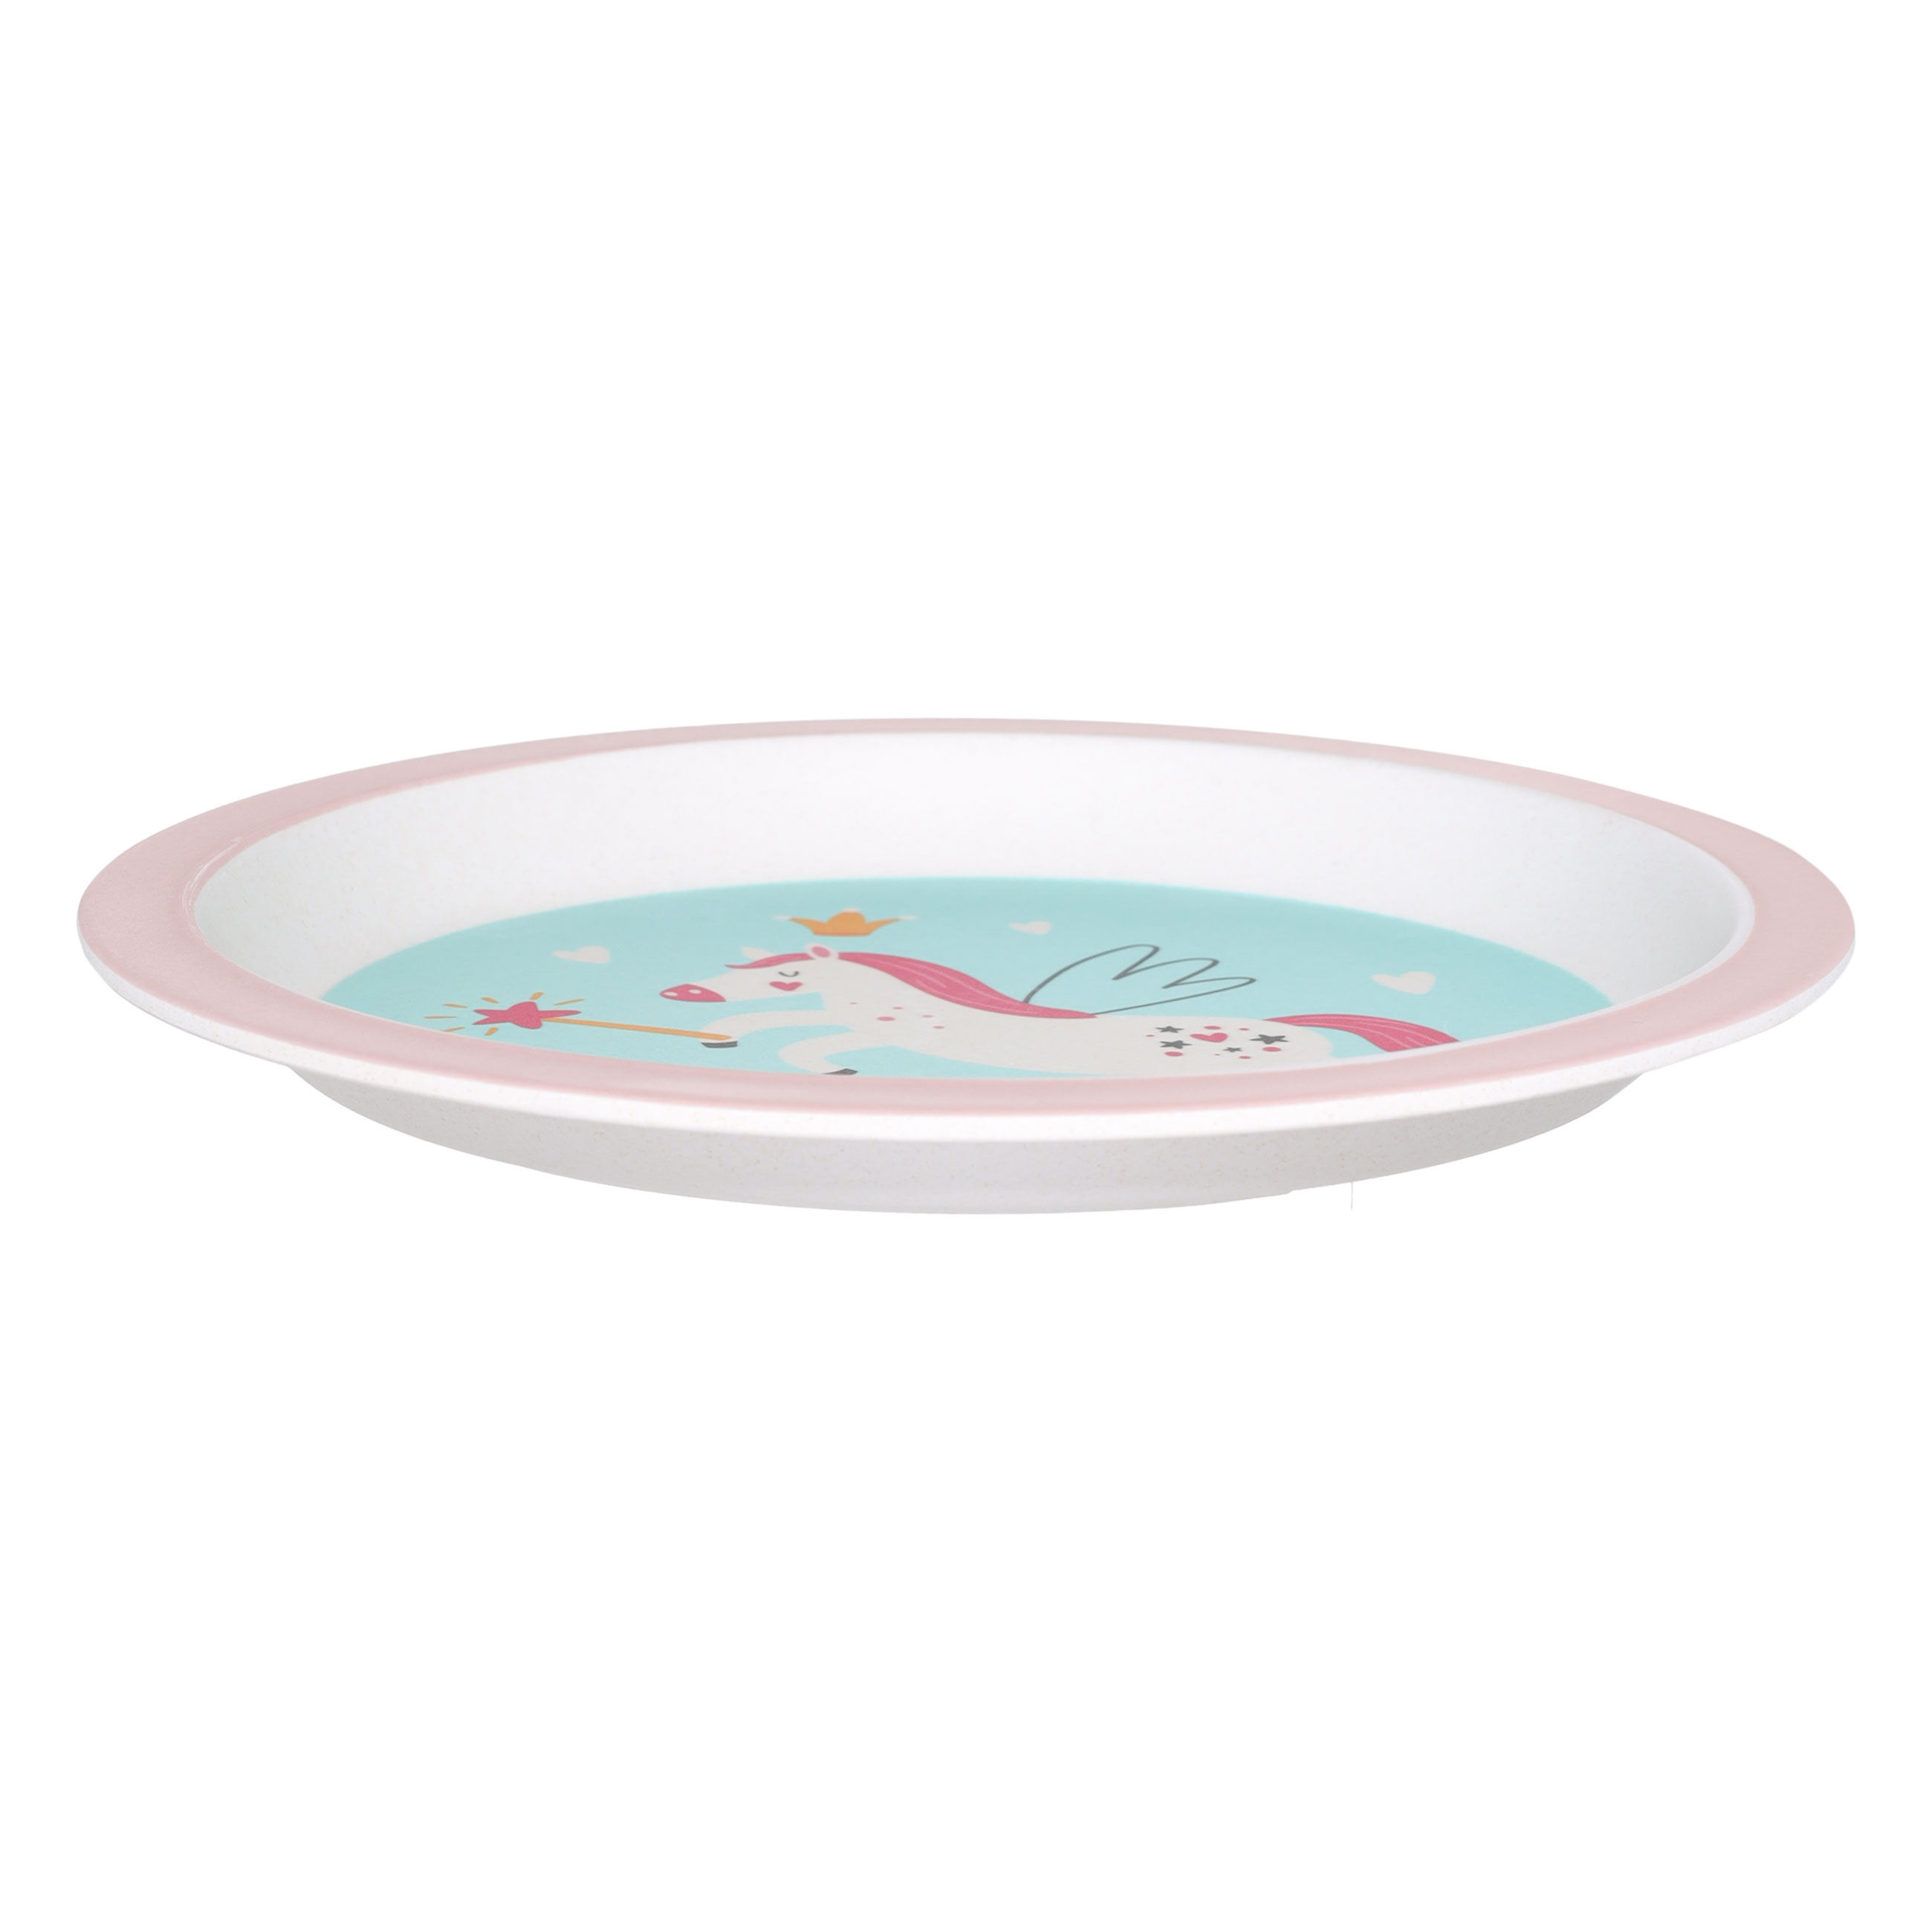 Набор посуды, детский, 5 пр, бамбук, розово-мятный, Единорог и радуга, Unicorn изображение № 4